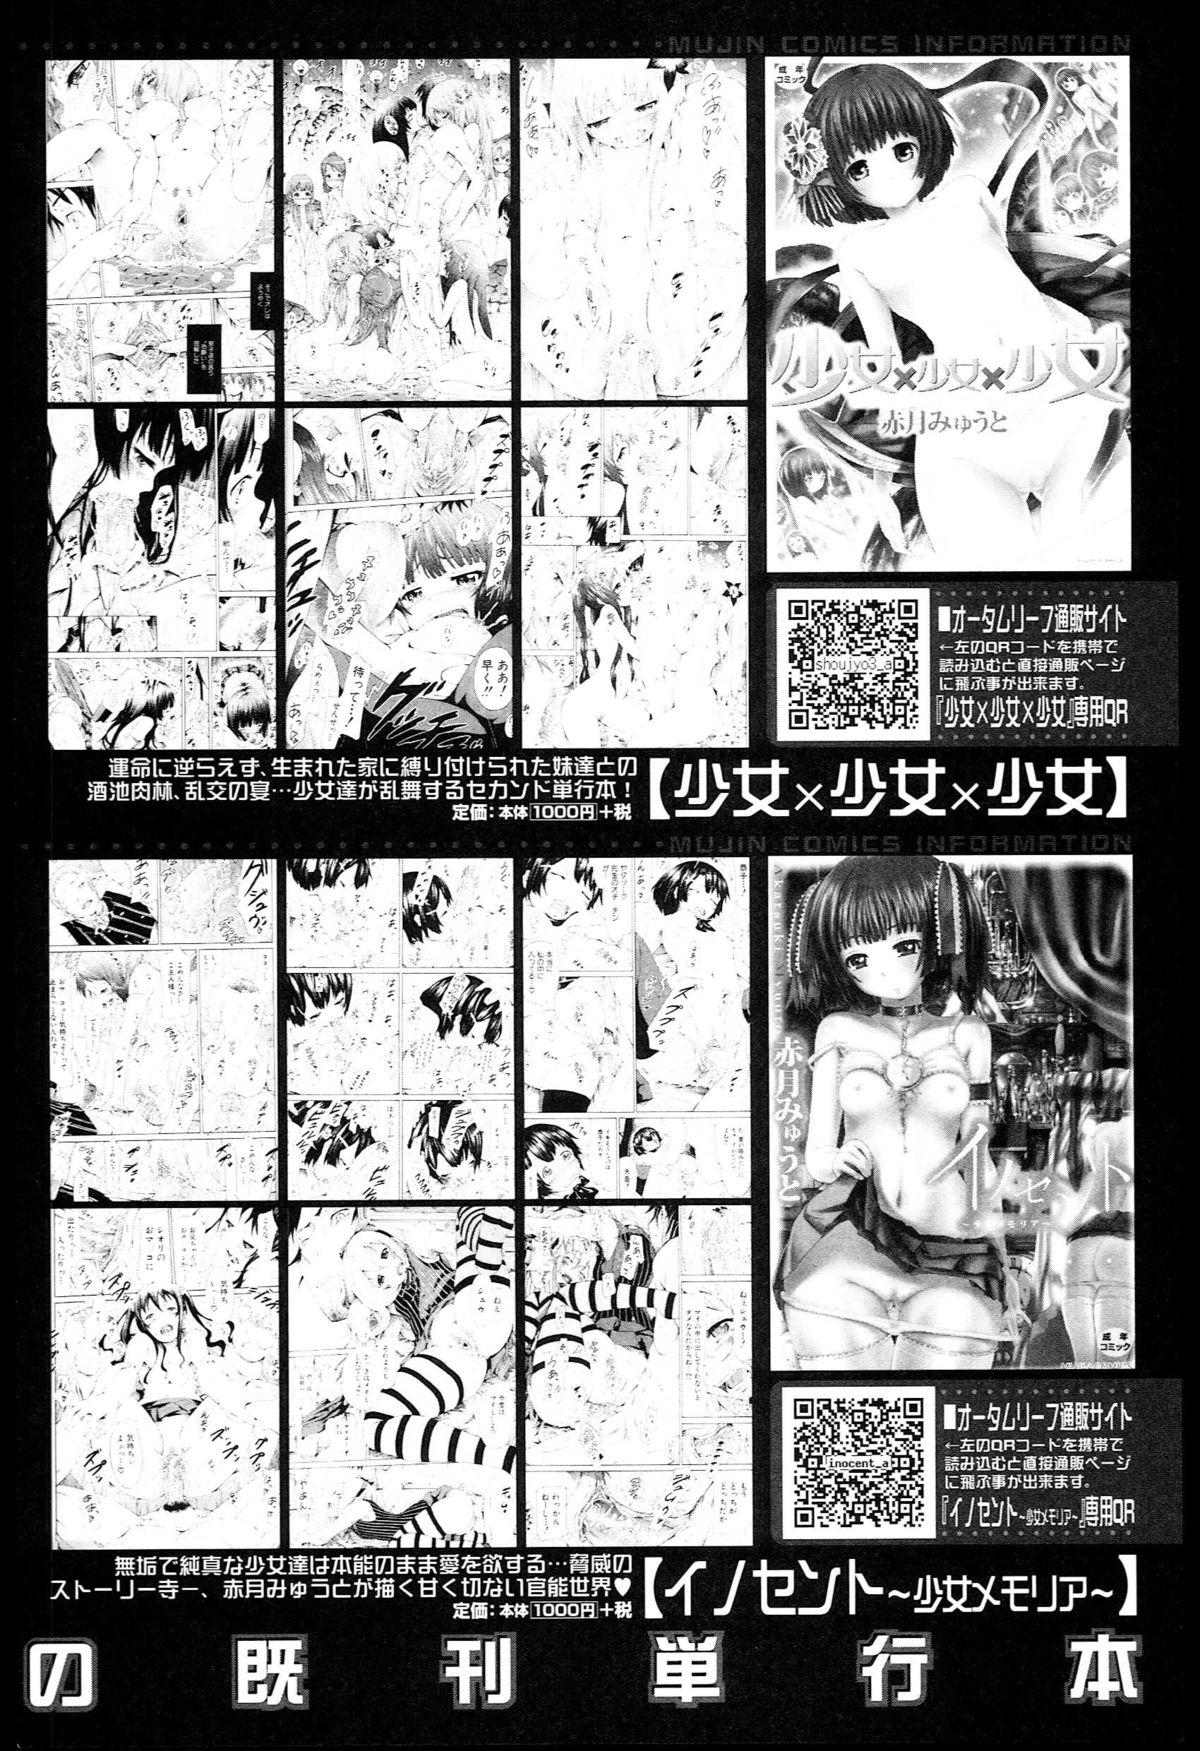 Natsumitsu x Harem + Melonbooks Gentei Shousasshi 209